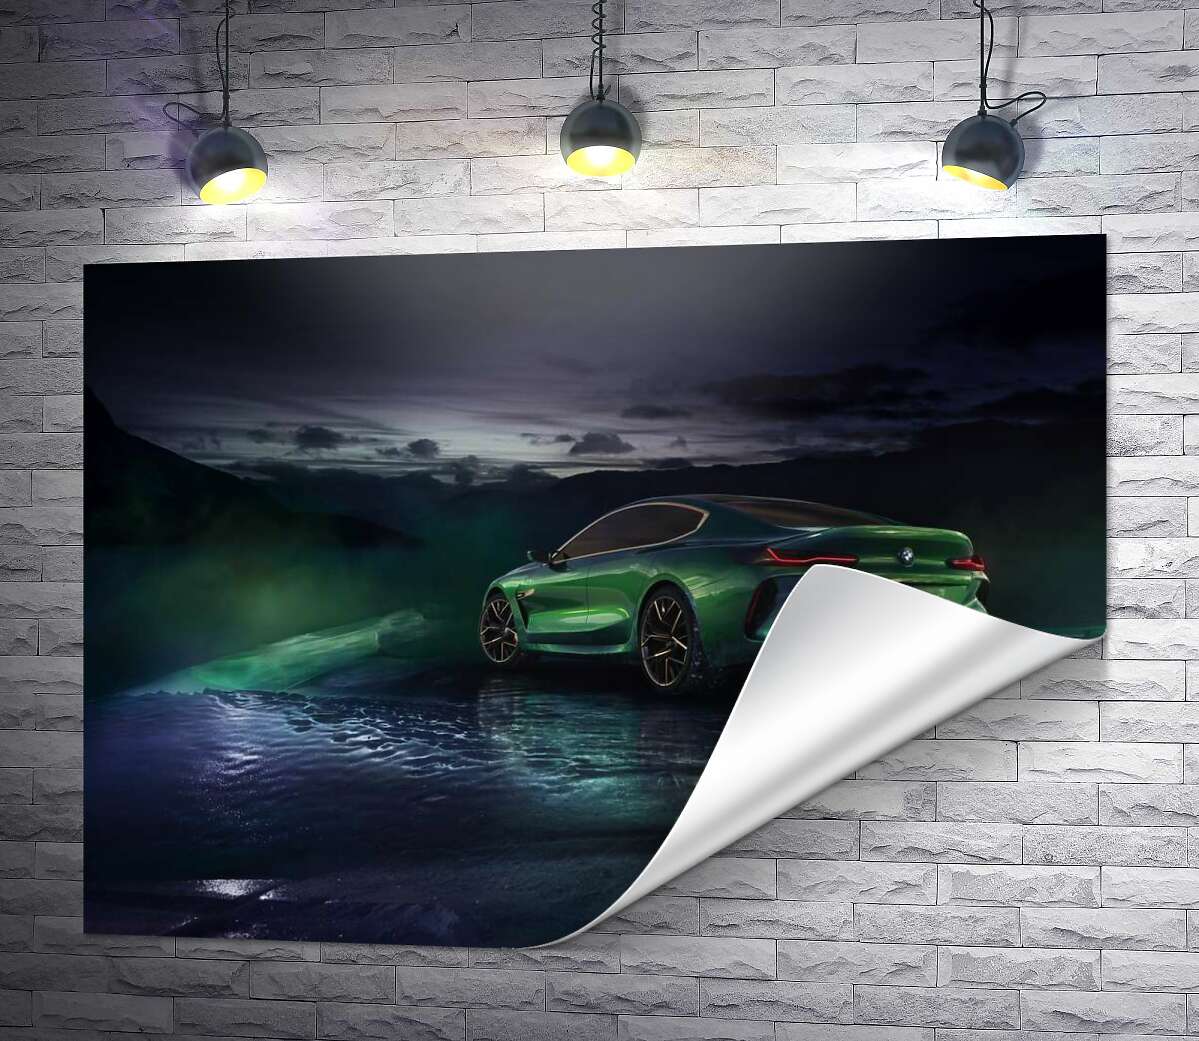 друк Зелений автомобіль BMW Concept M8 Gran Coupe в серпанку